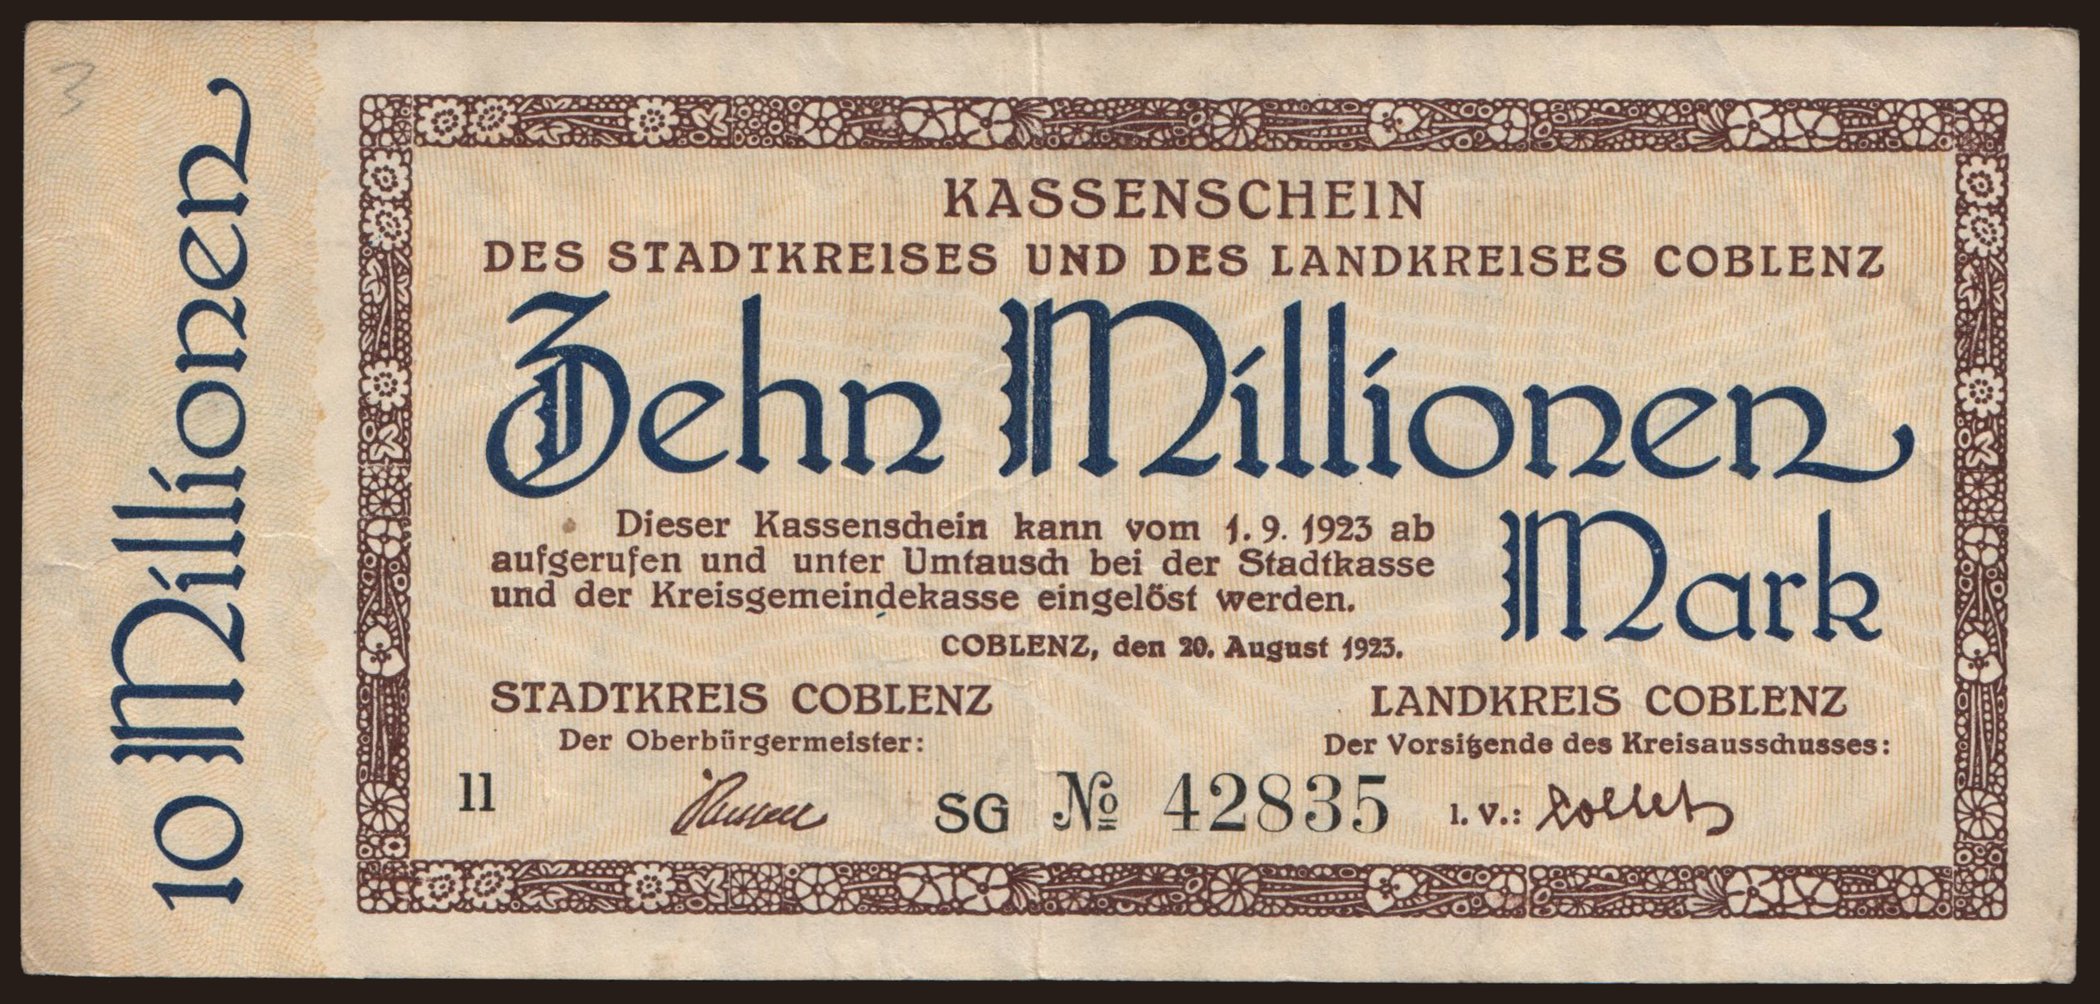 Coblenz/ Stadtkreis und Landkreis, 10.000.000 Mark, 1923